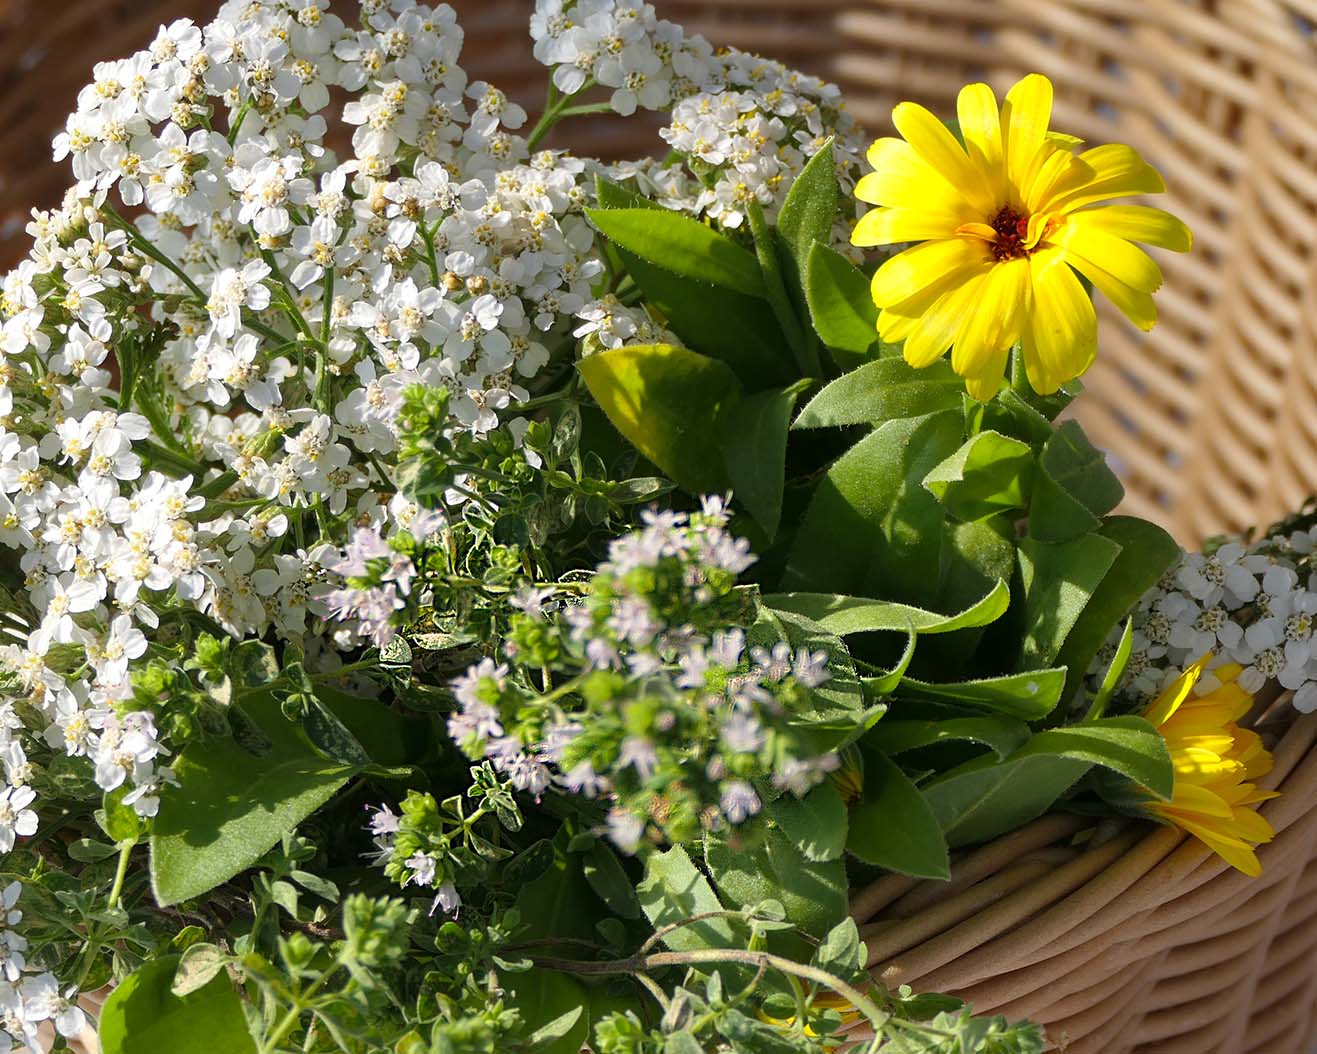 Kräutersammelkorb für den Monat August mit Ringelblumen, Thymian und Schafgarbe.